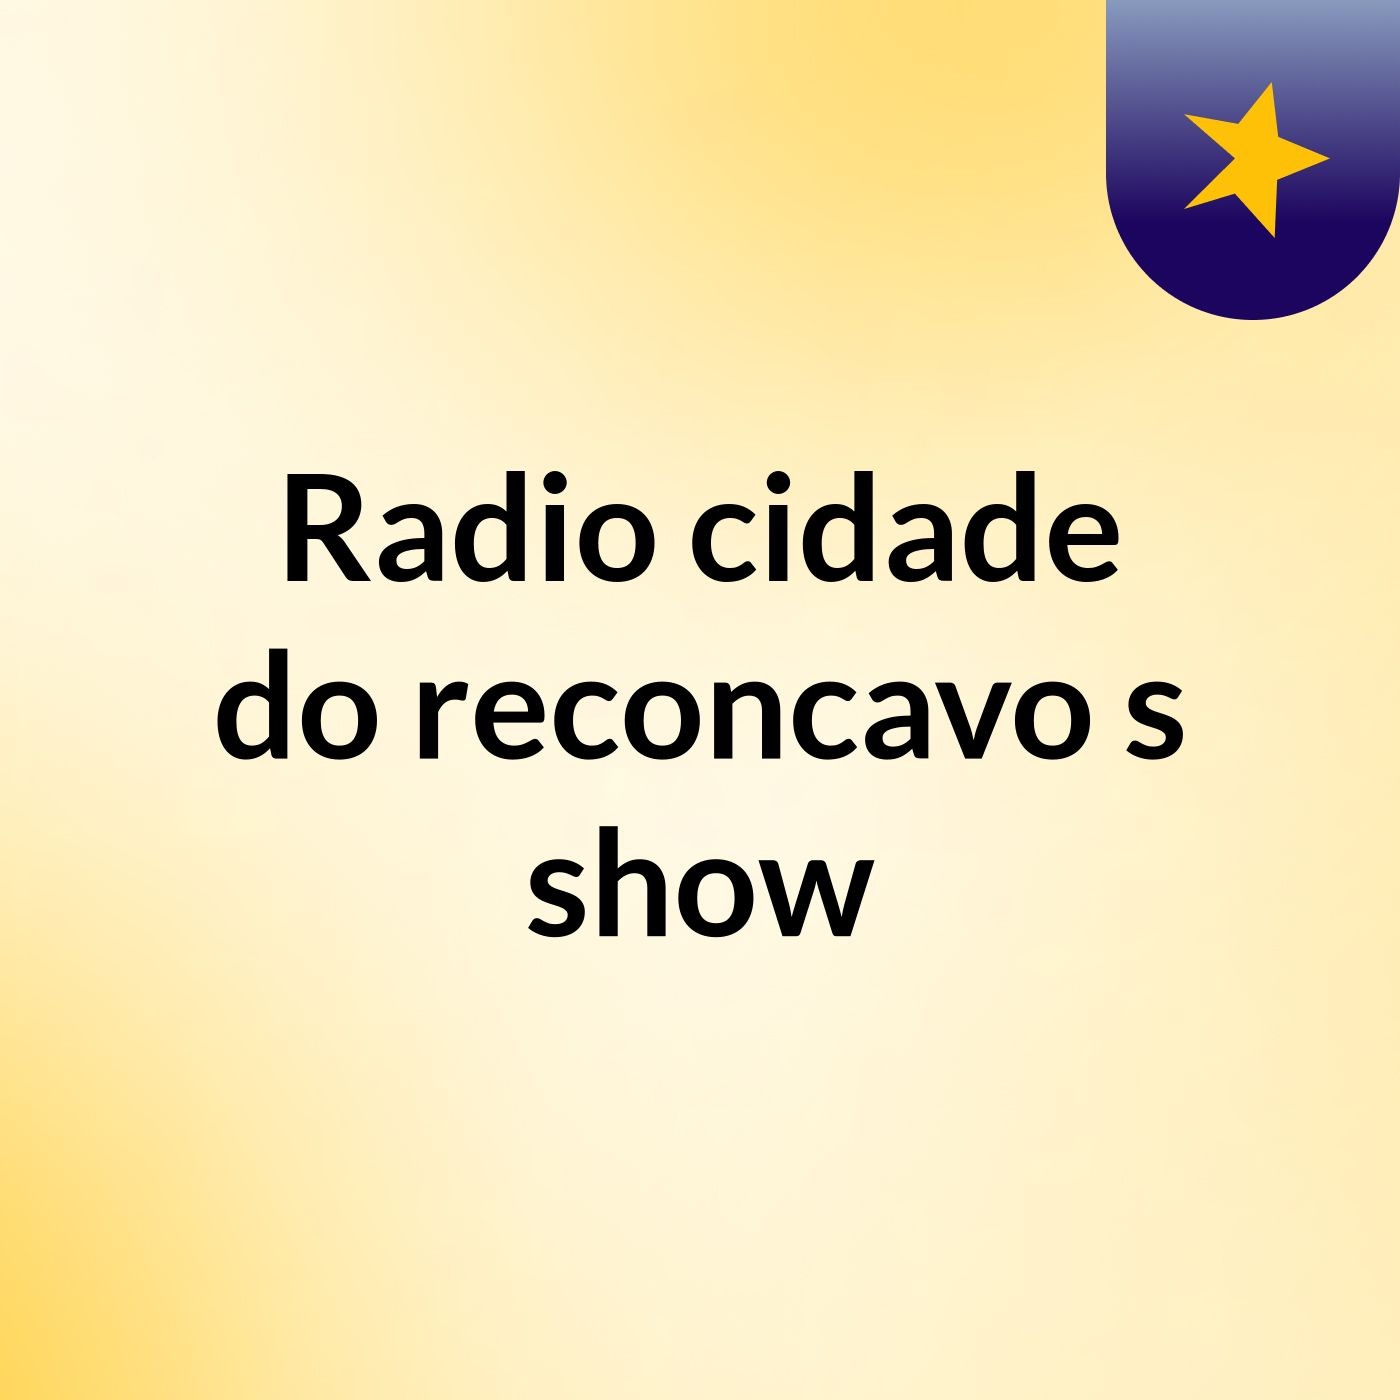 Radio cidade do reconcavo's show